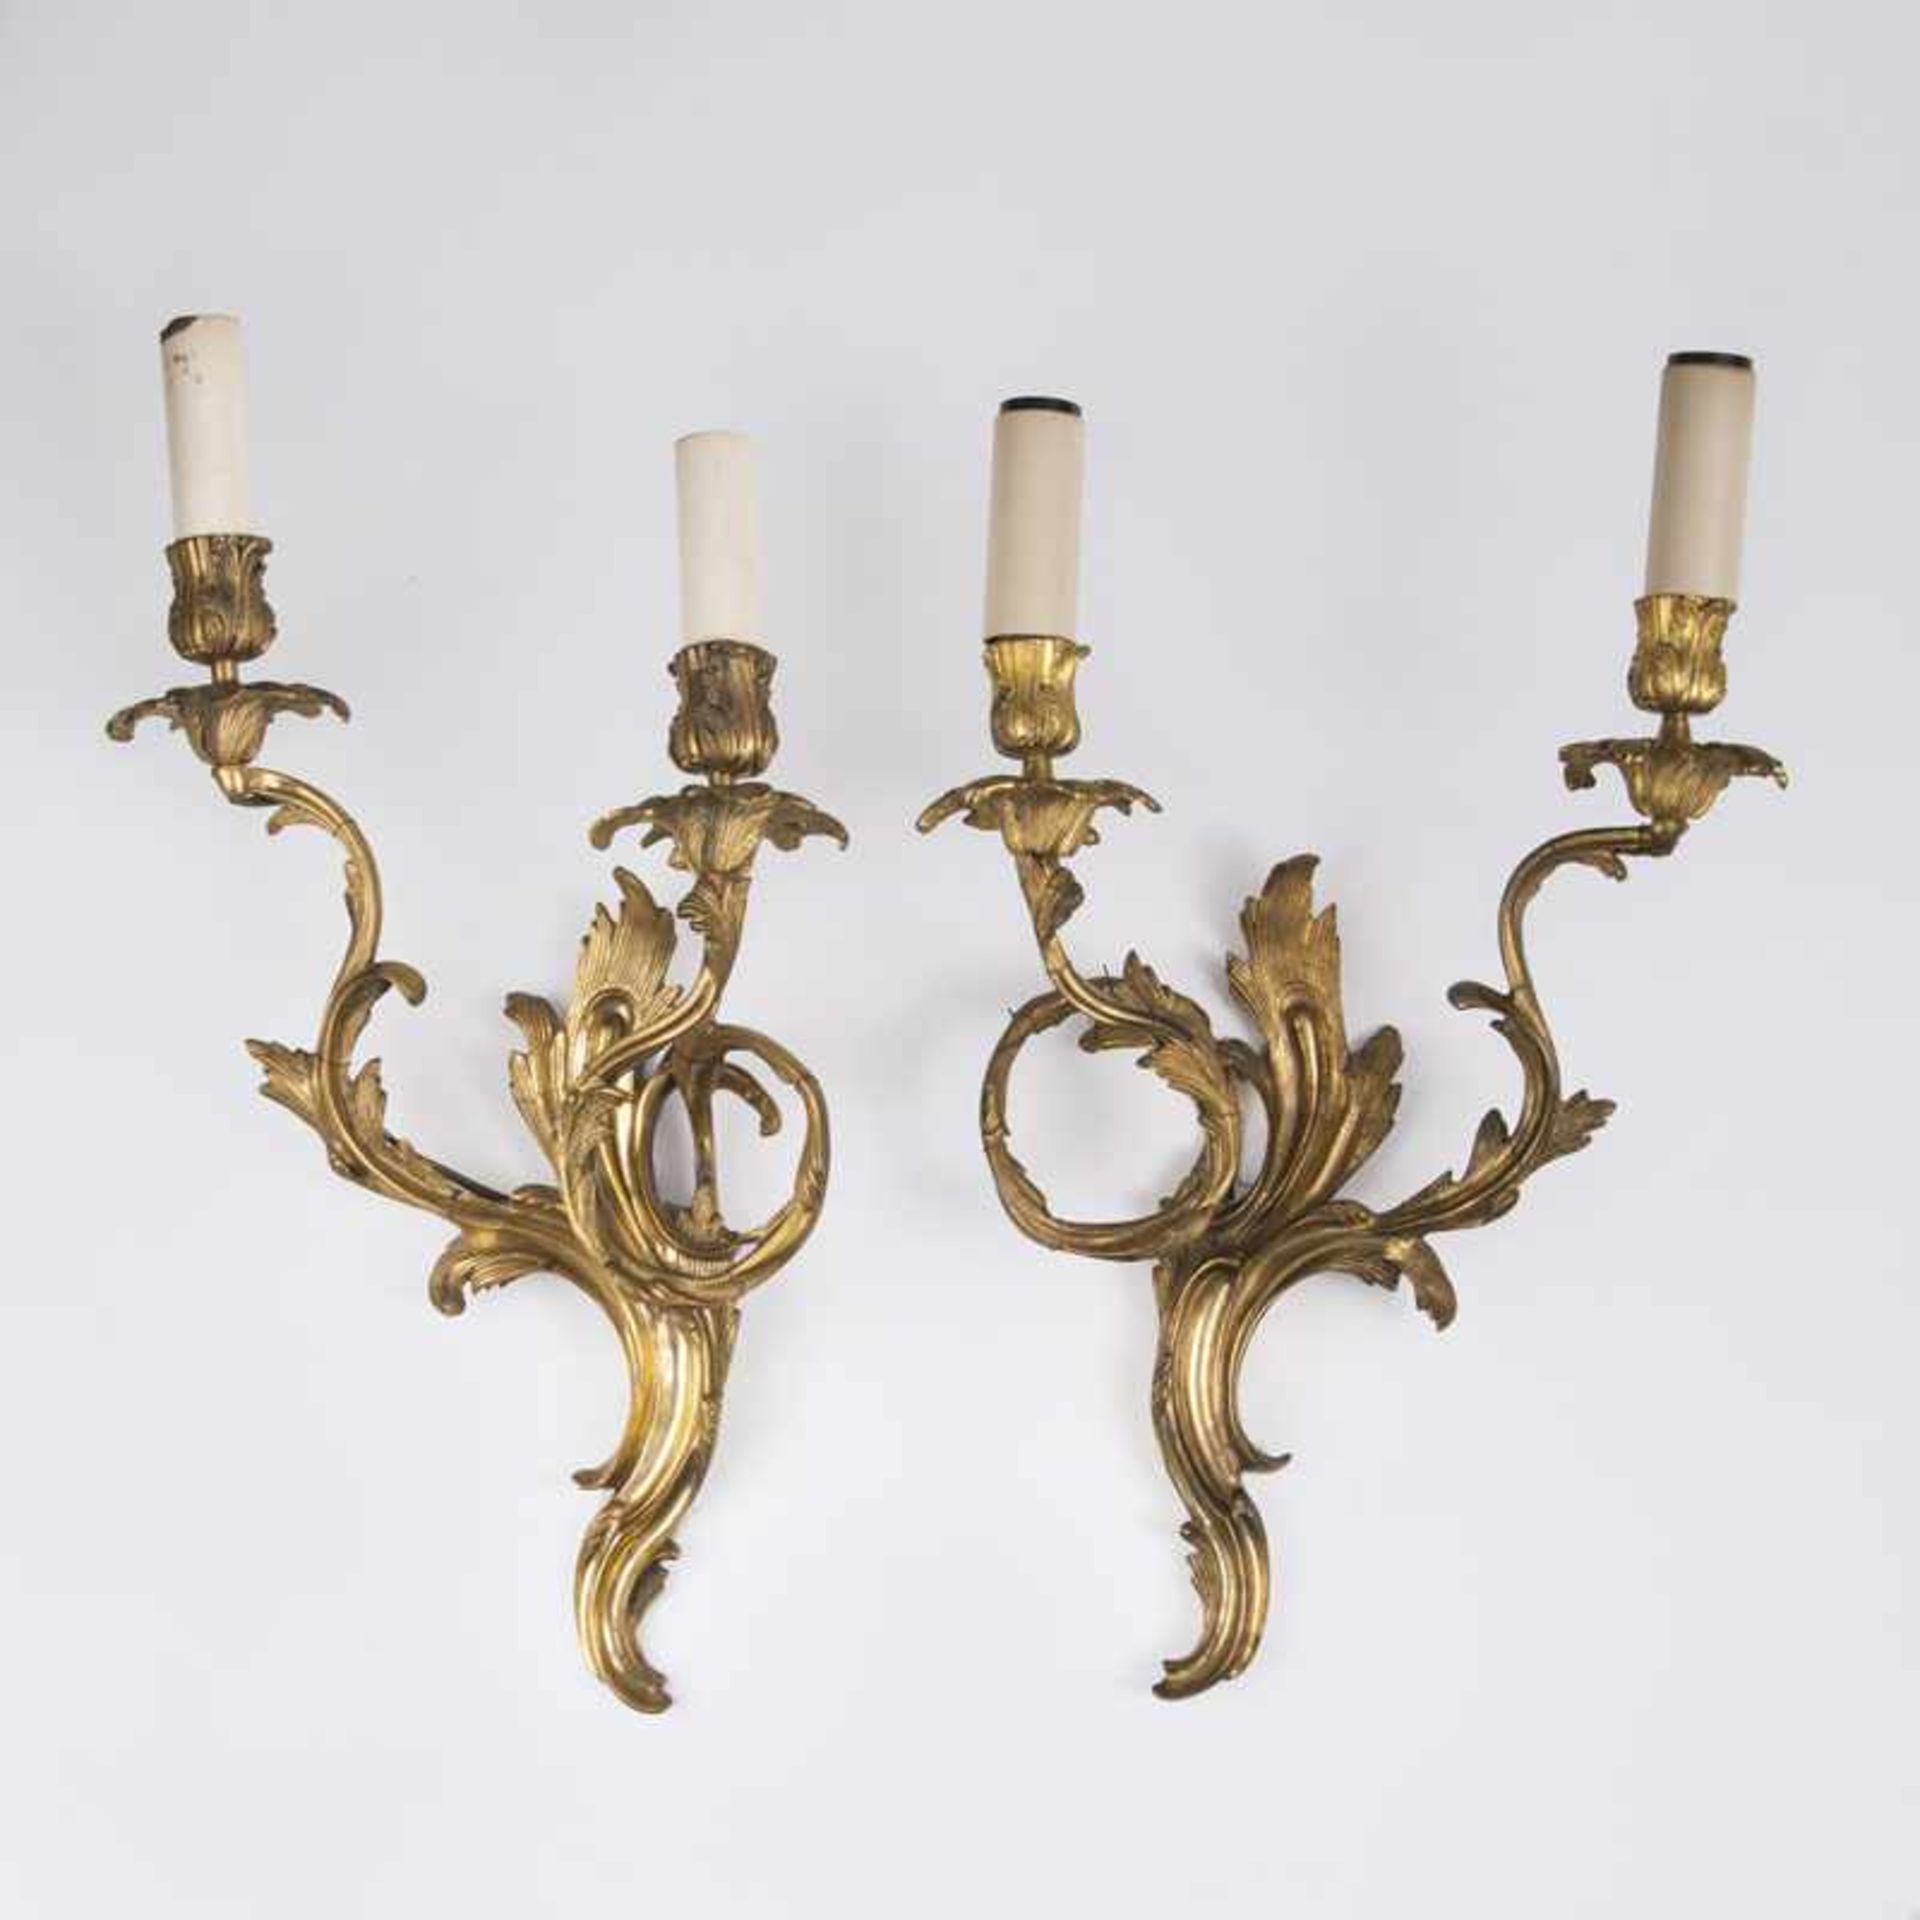 Paar vergoldeter Appliken im Barock-Stil Um 1900. Bronze, vergoldet. 2 geschwungene Leuchterarme mit